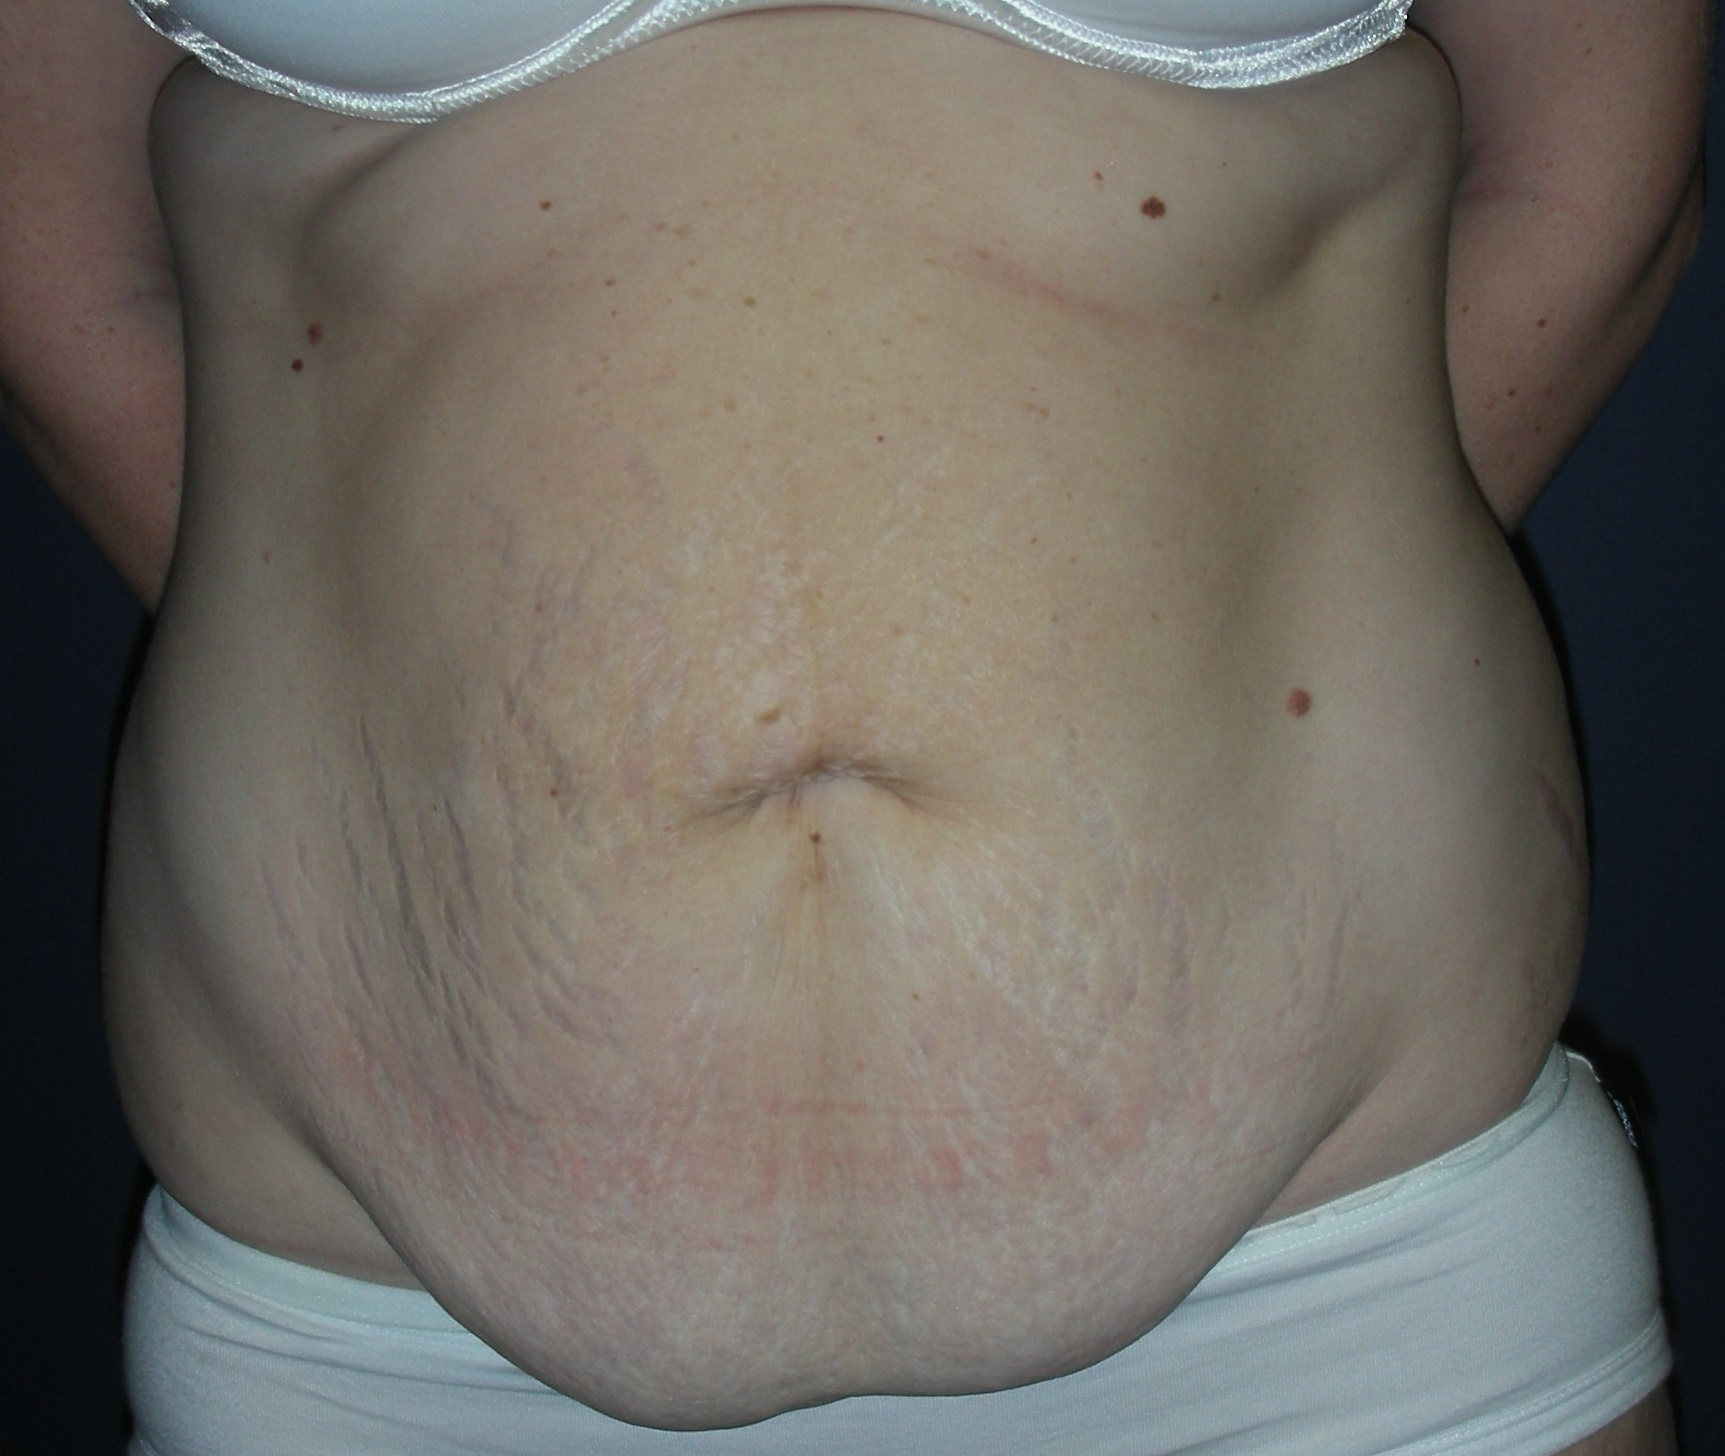 Pre surgery abdomen